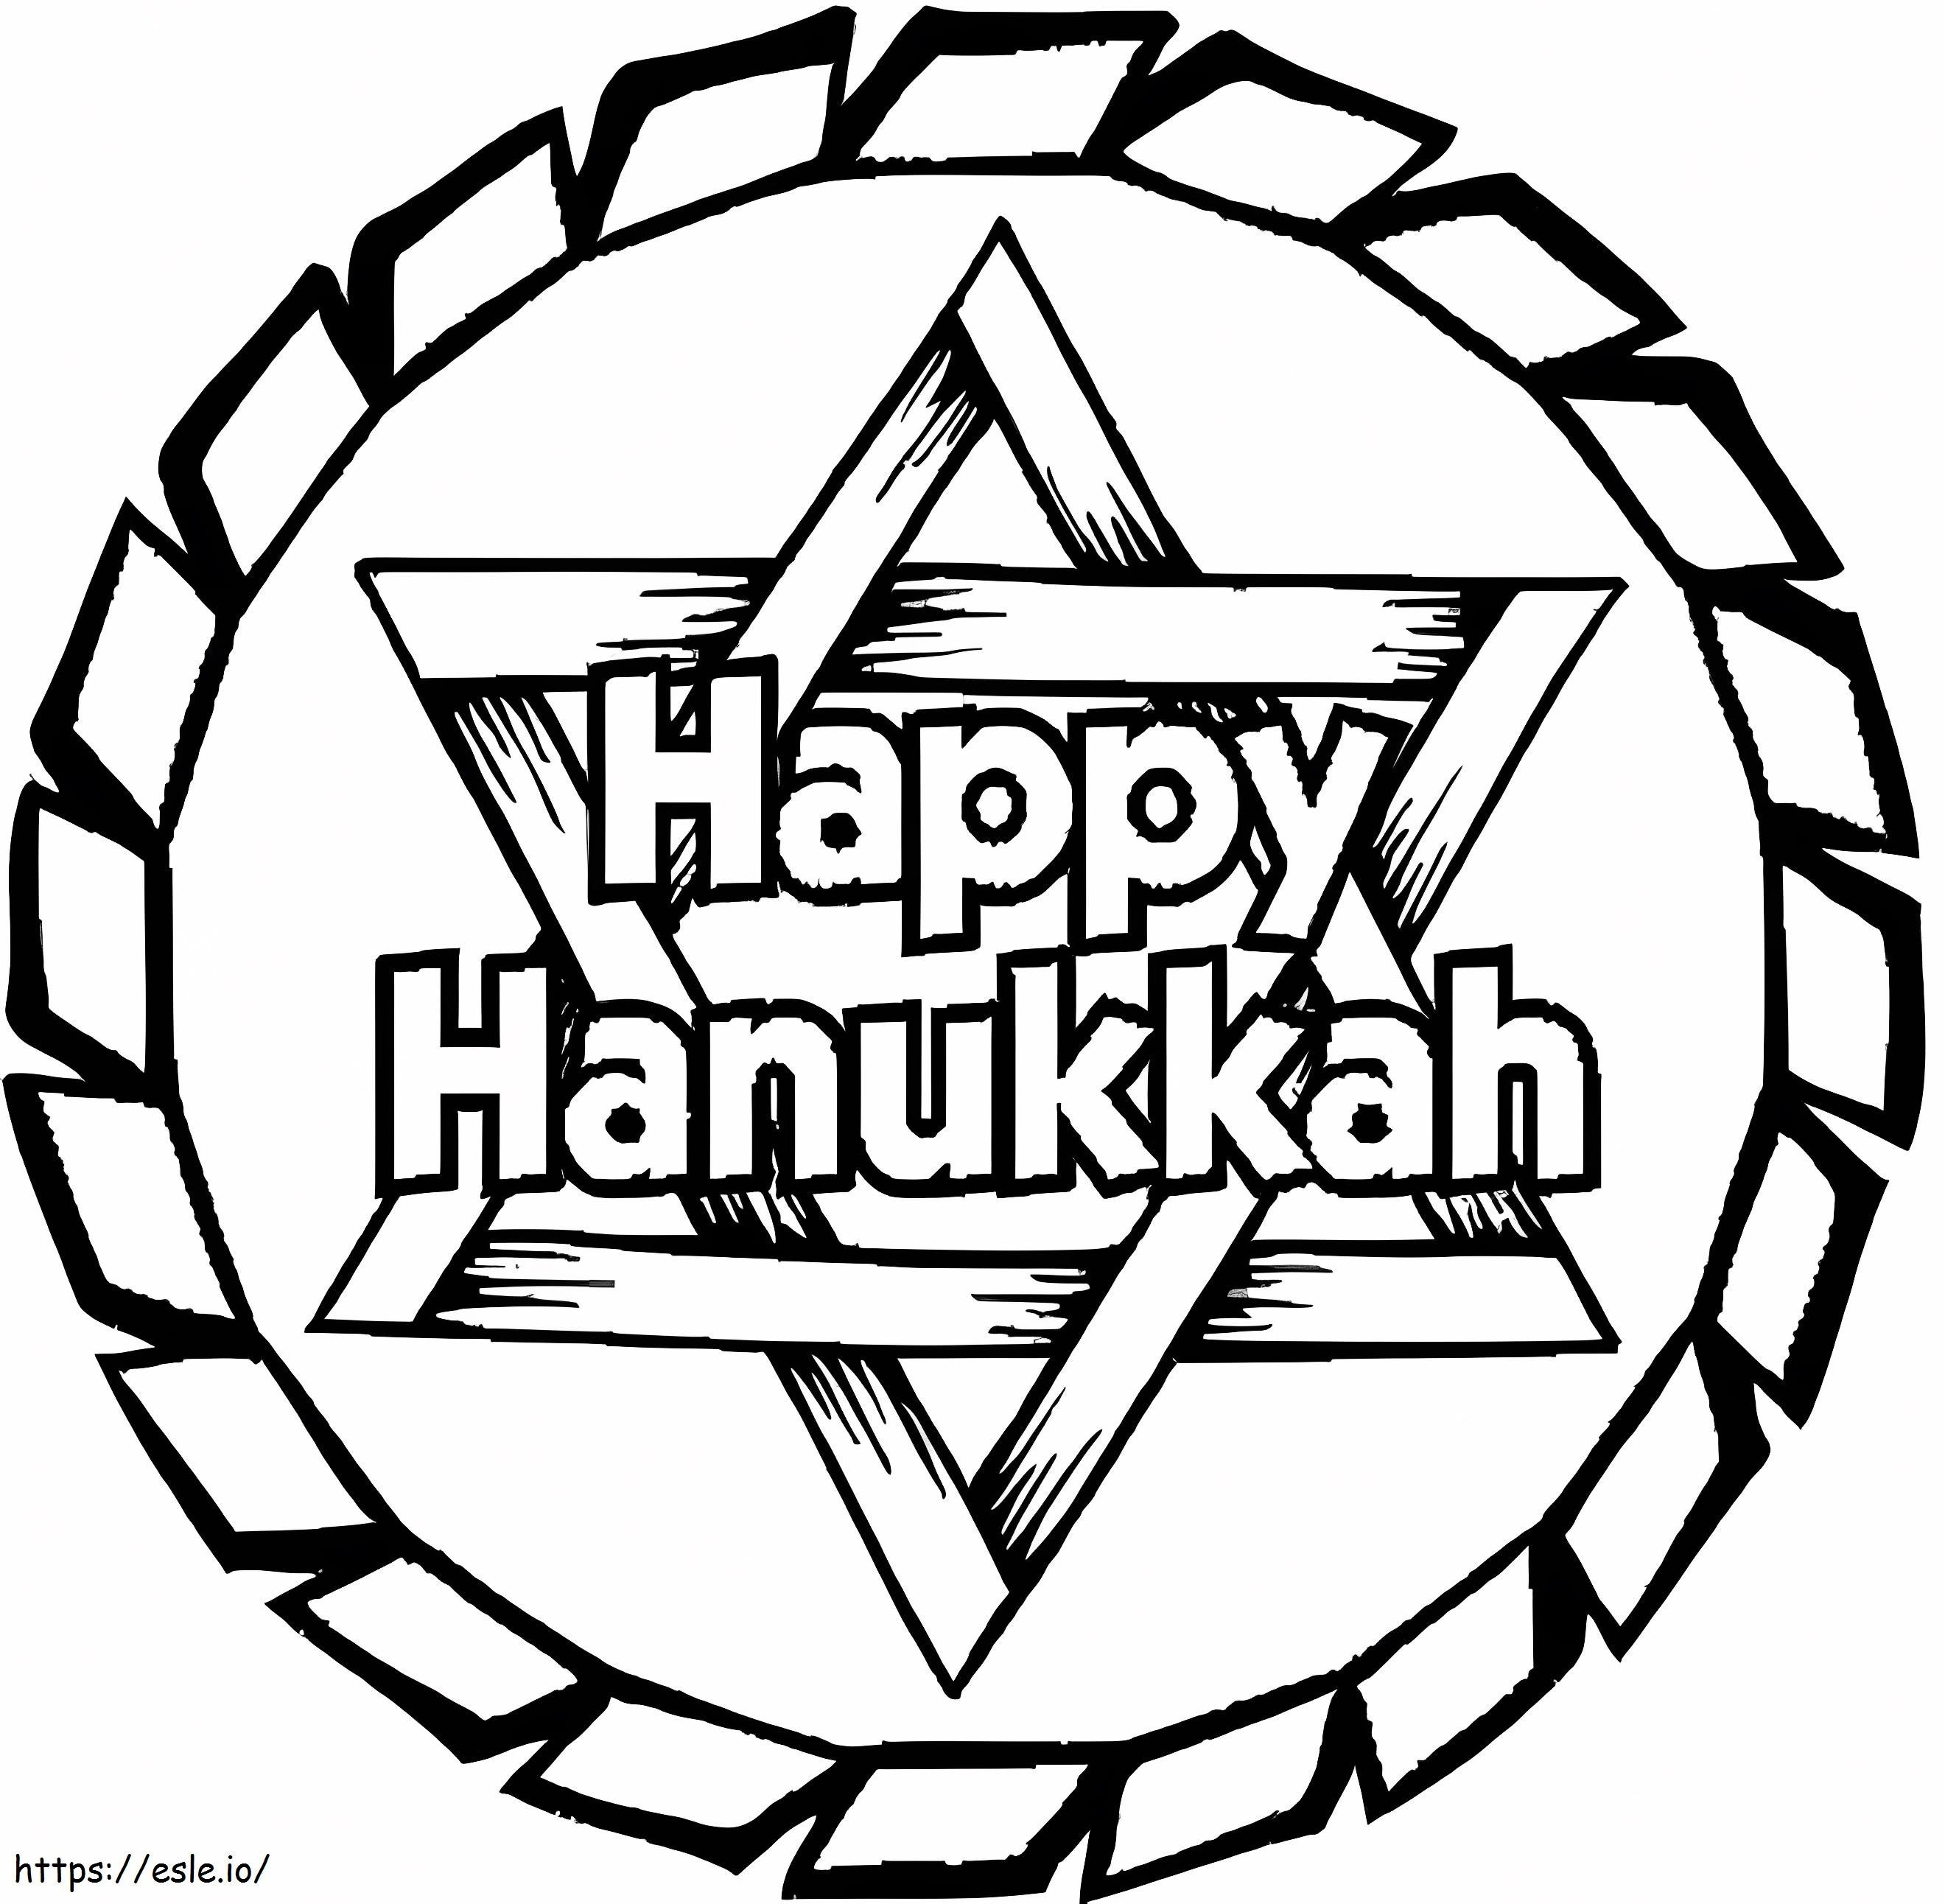 Printable Happy Hanukkah coloring page